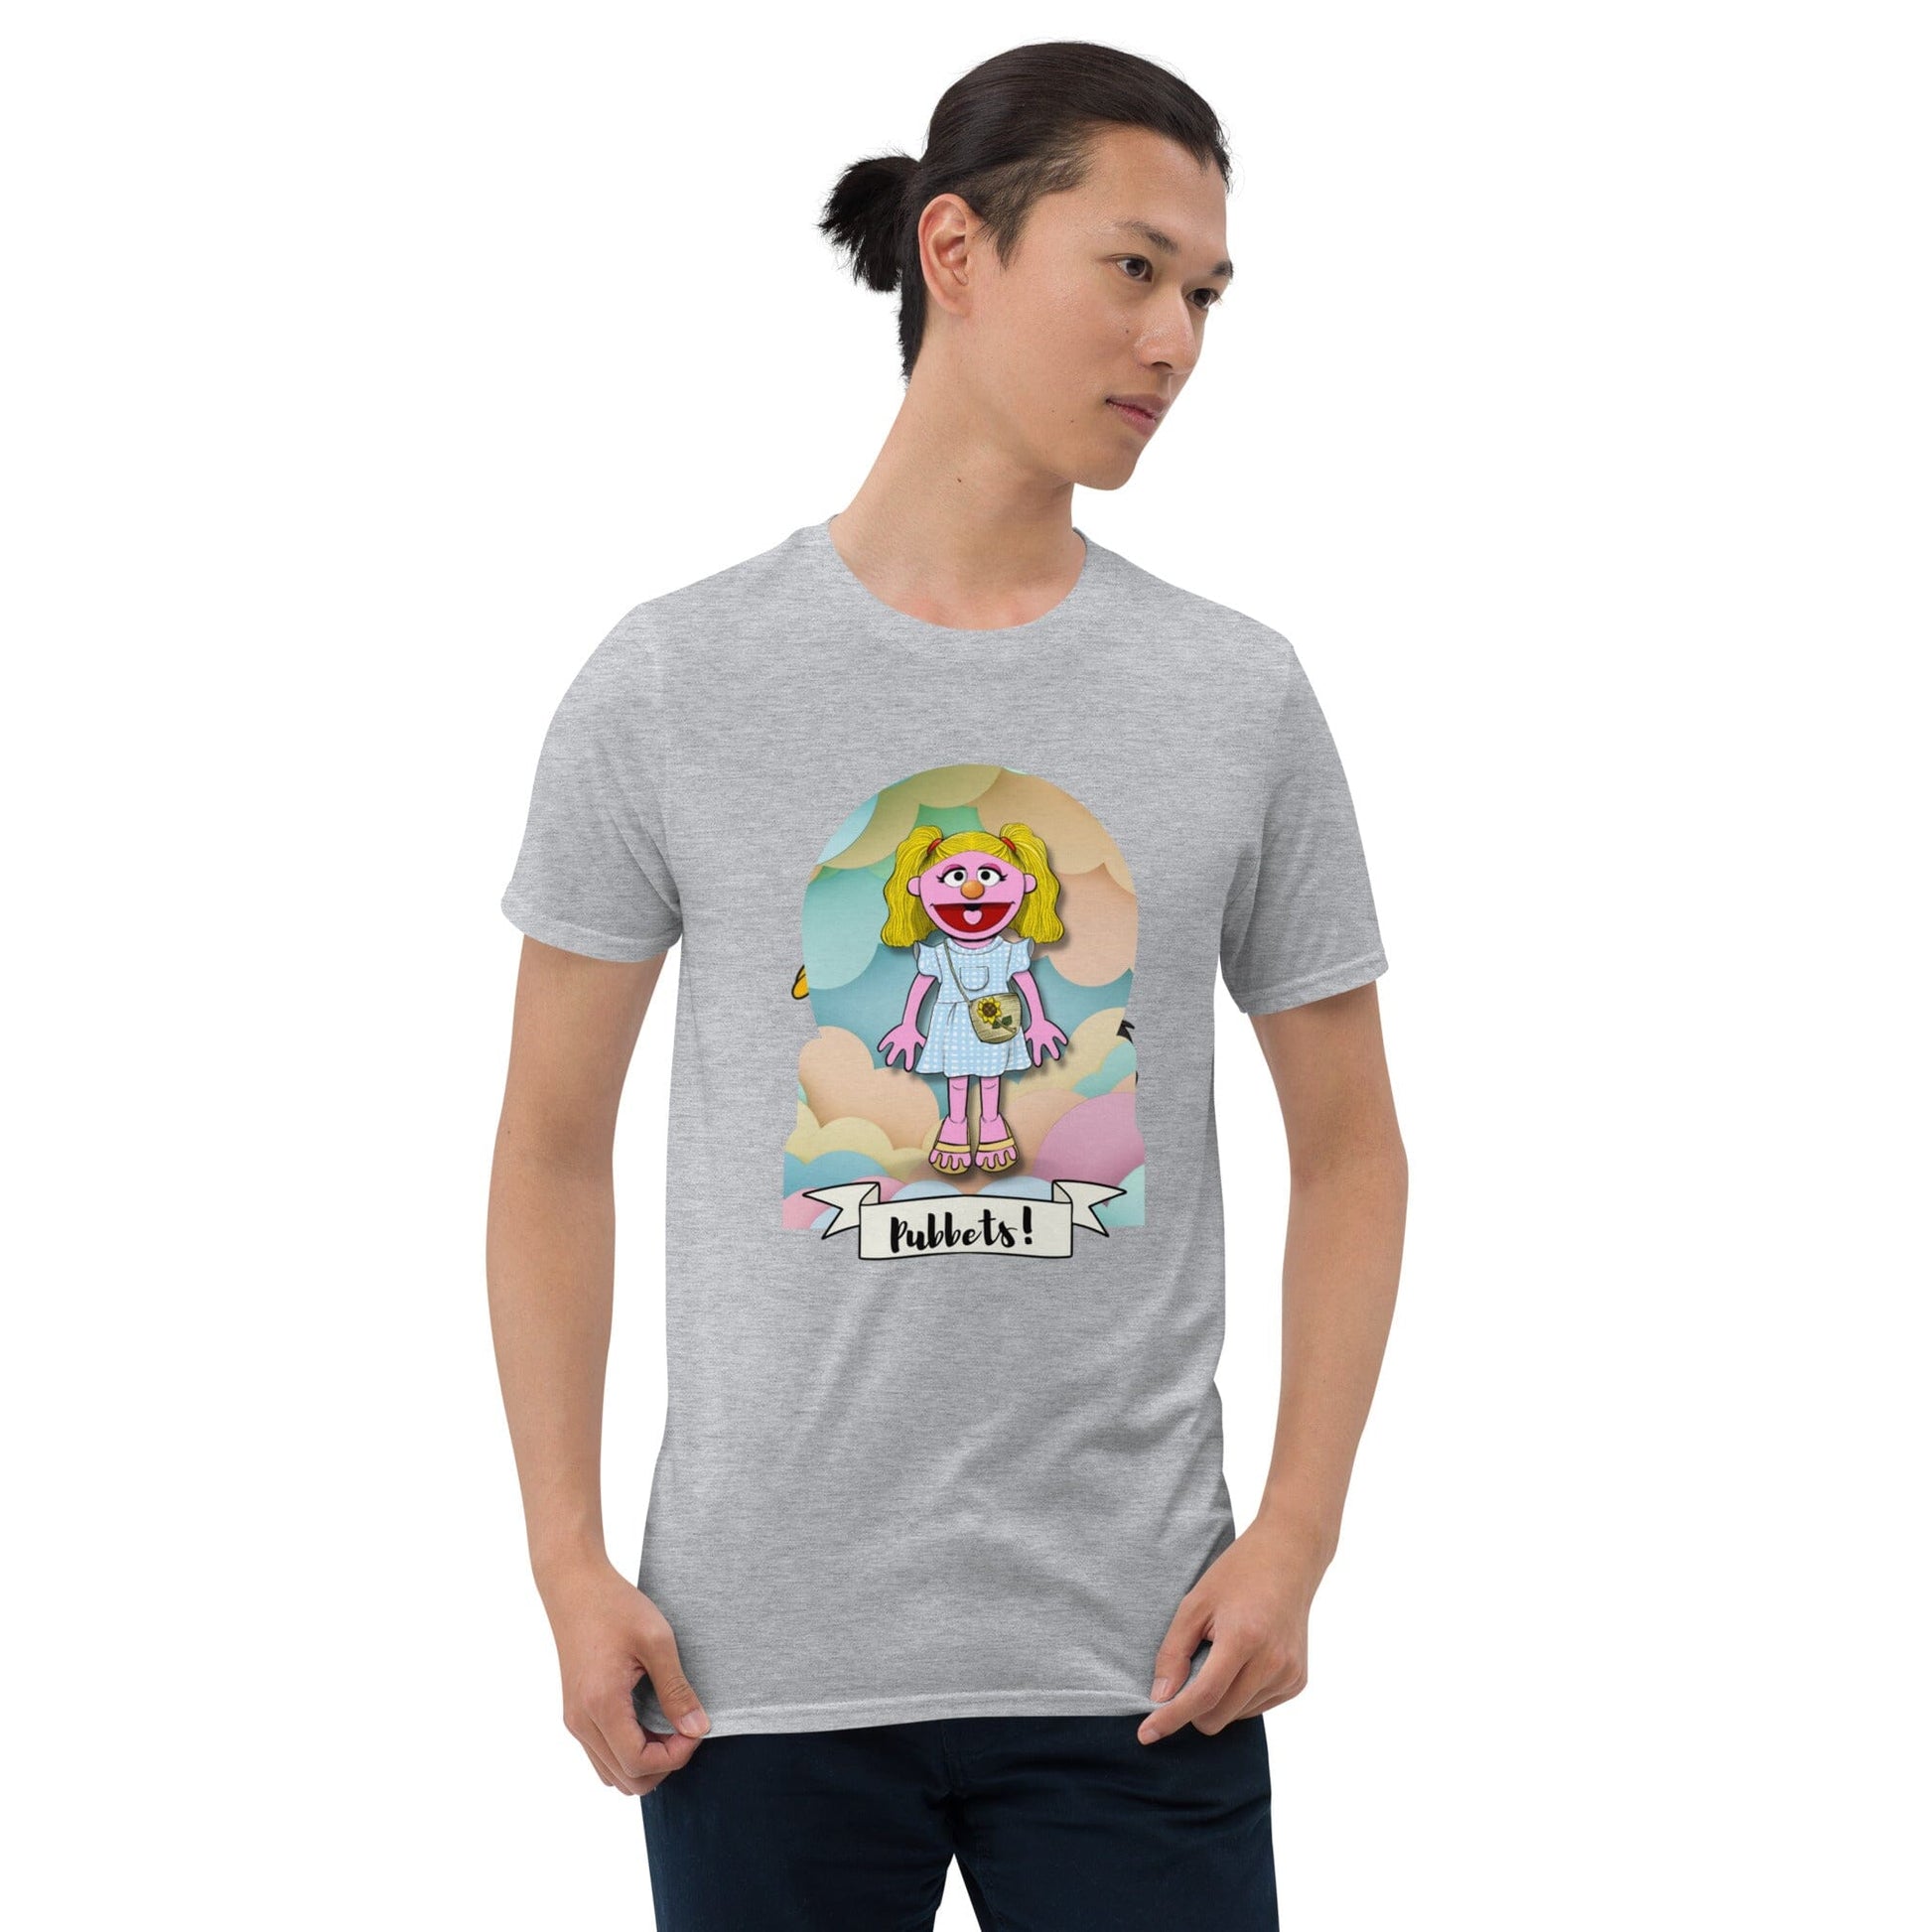 Pubbets Merch Pubbet 5: Rosey Short-Sleeve Unisex T-Shirt